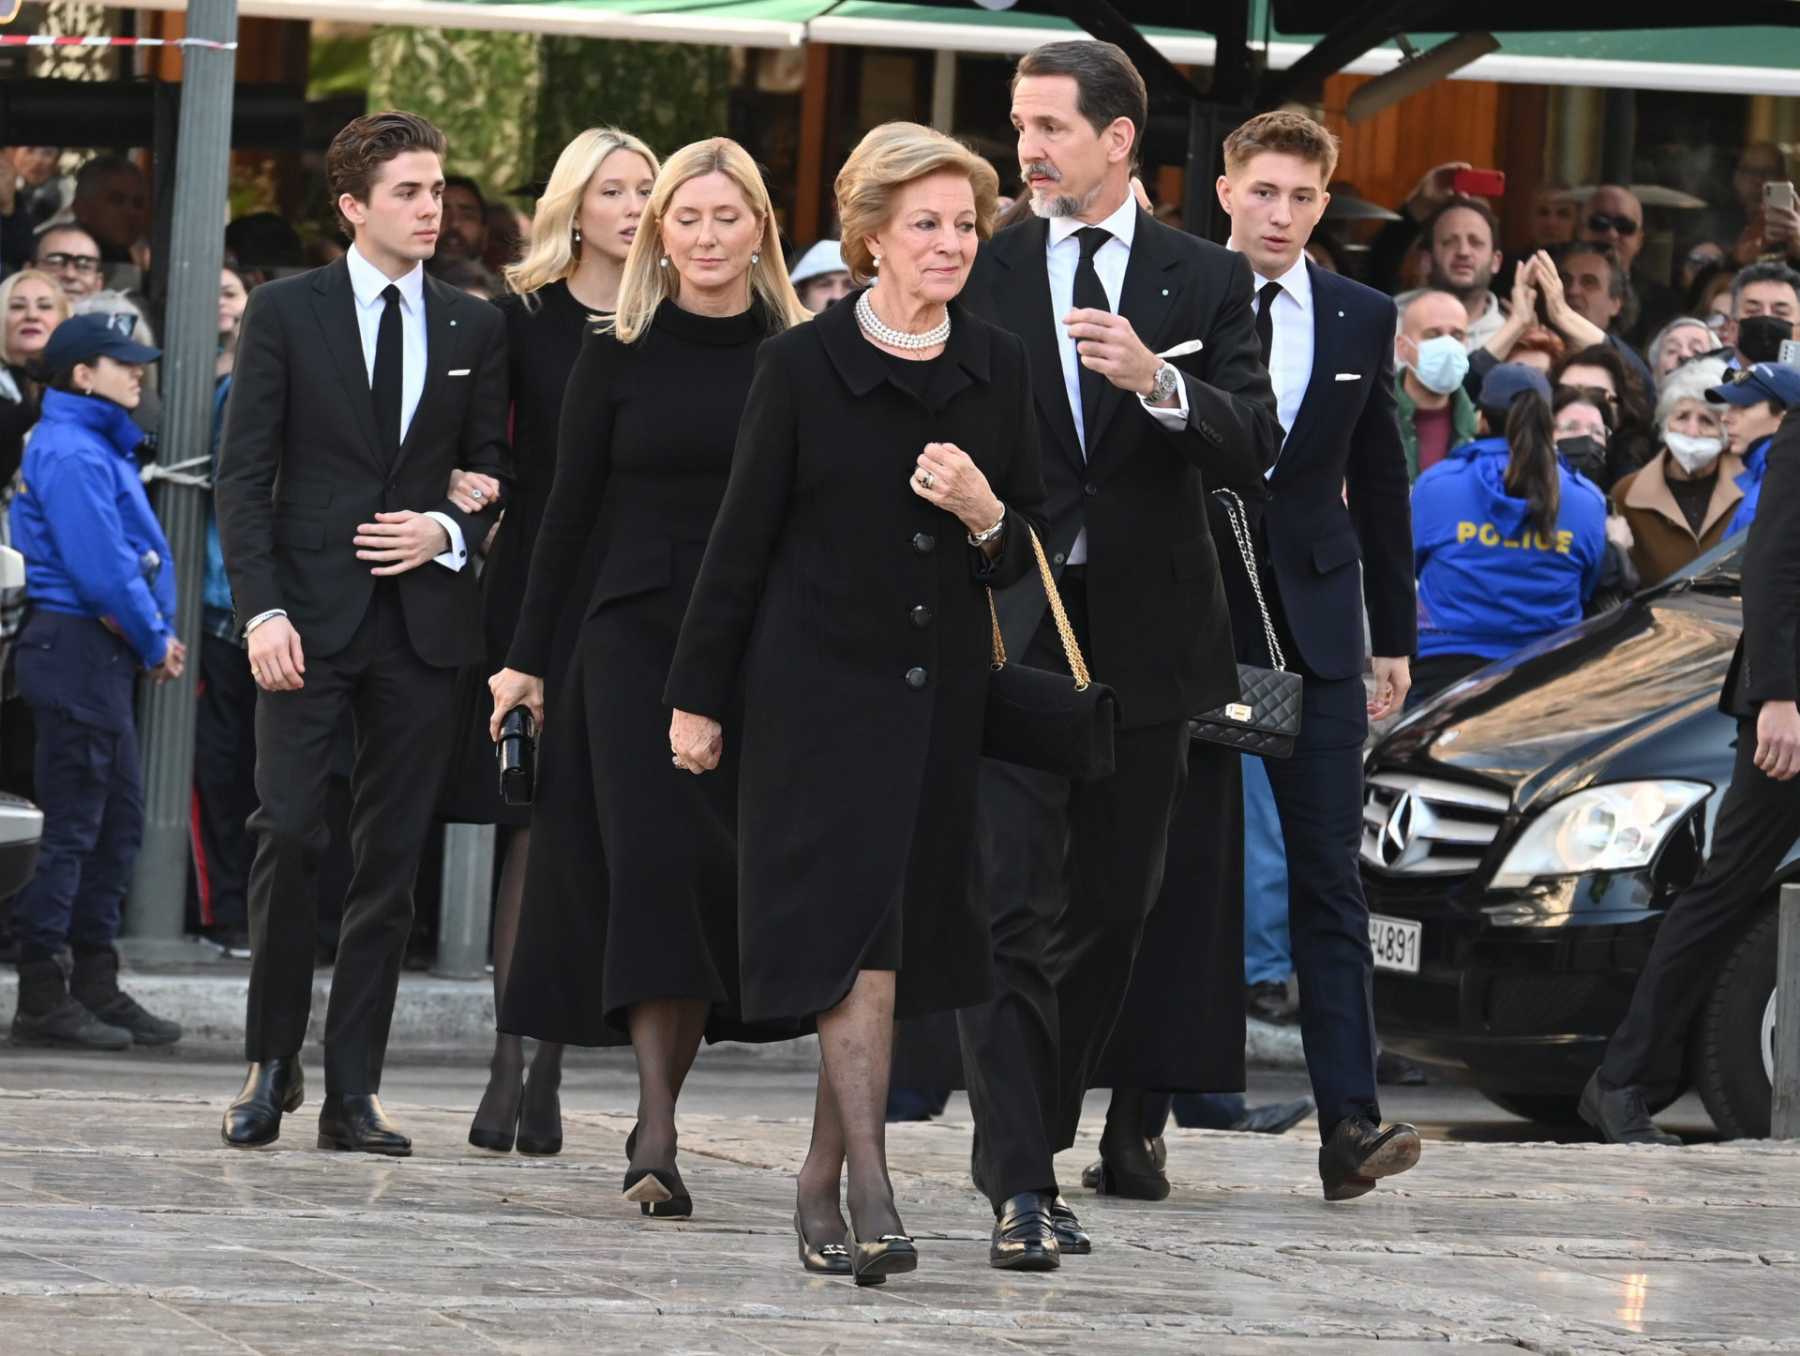 La reina Ana María de Grecia, el príncipe Pablo, la princesa Teodora, y Marie-Chantal Miller con su familia a su llegada a la Metrópolis en Atenas / Gtres